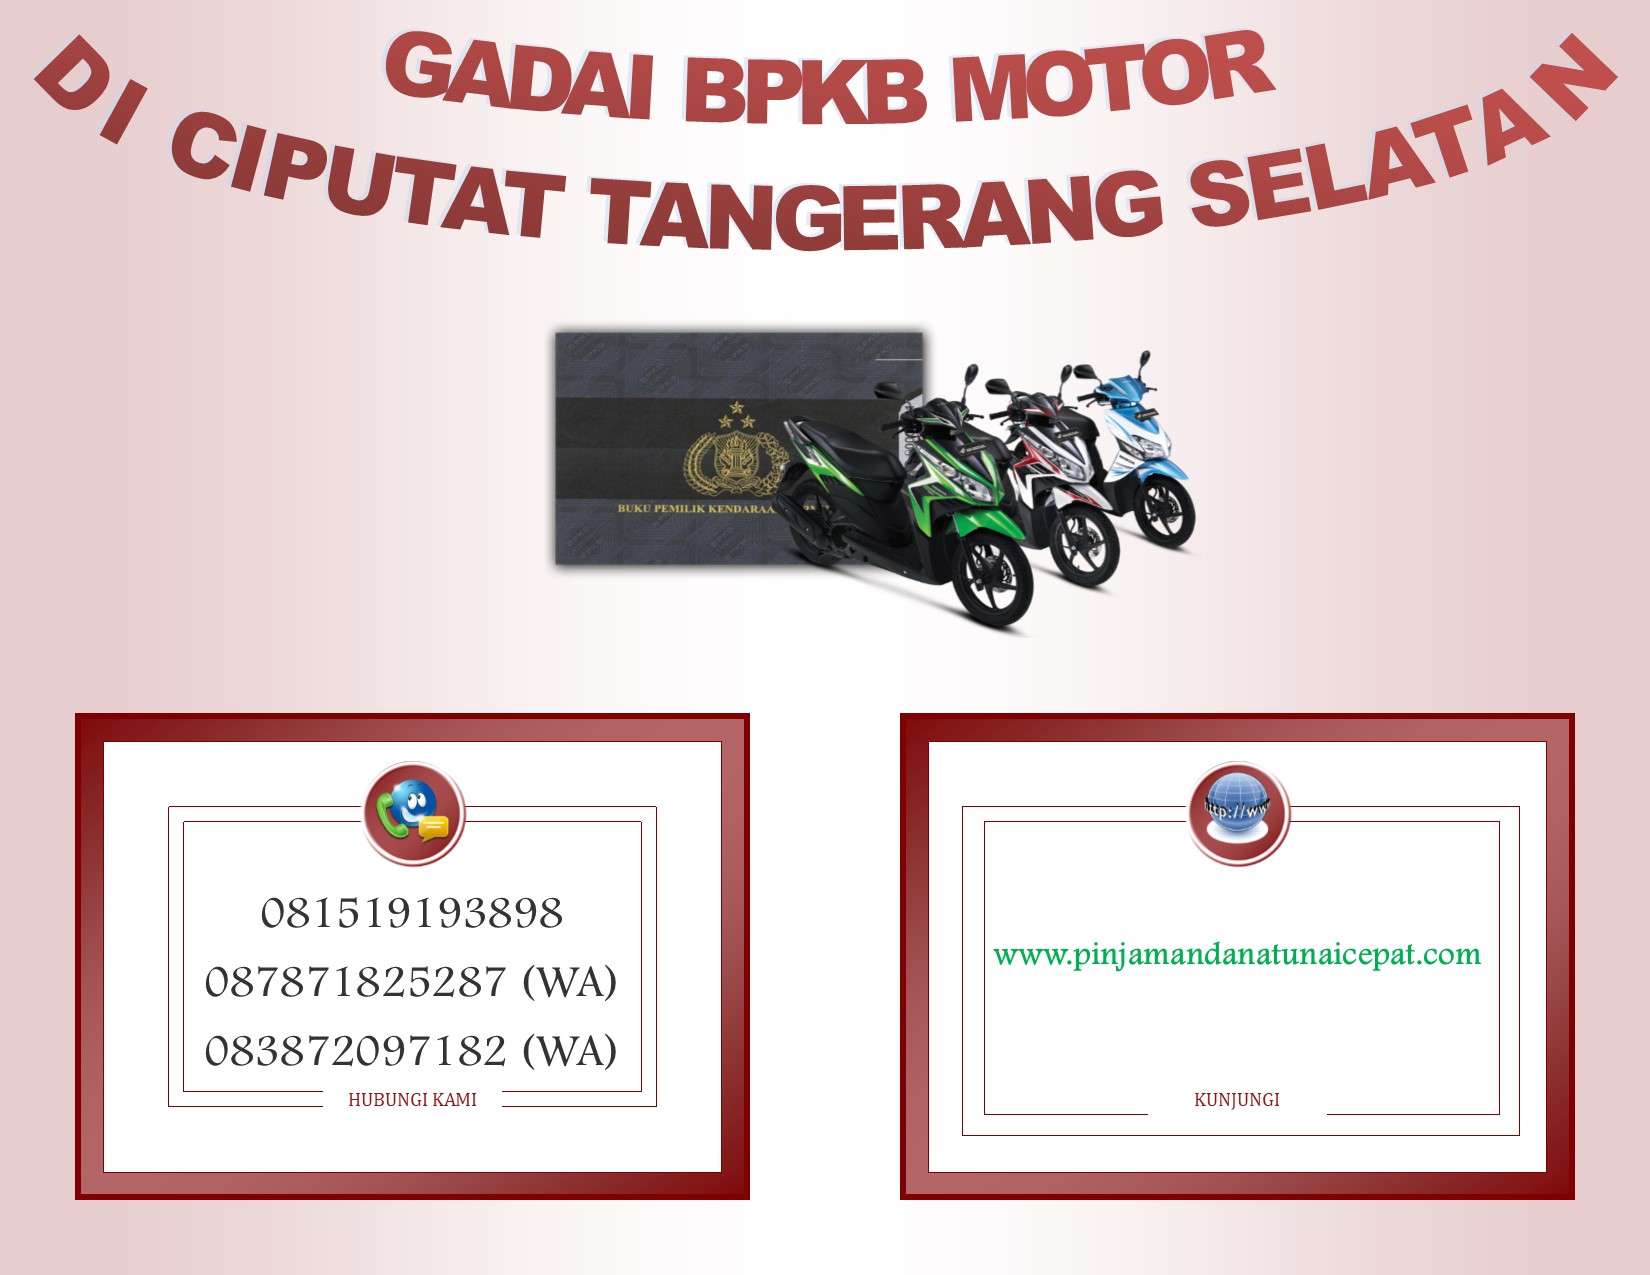 Gadai BPKb Motor Di Ciputat Tangerang selatan